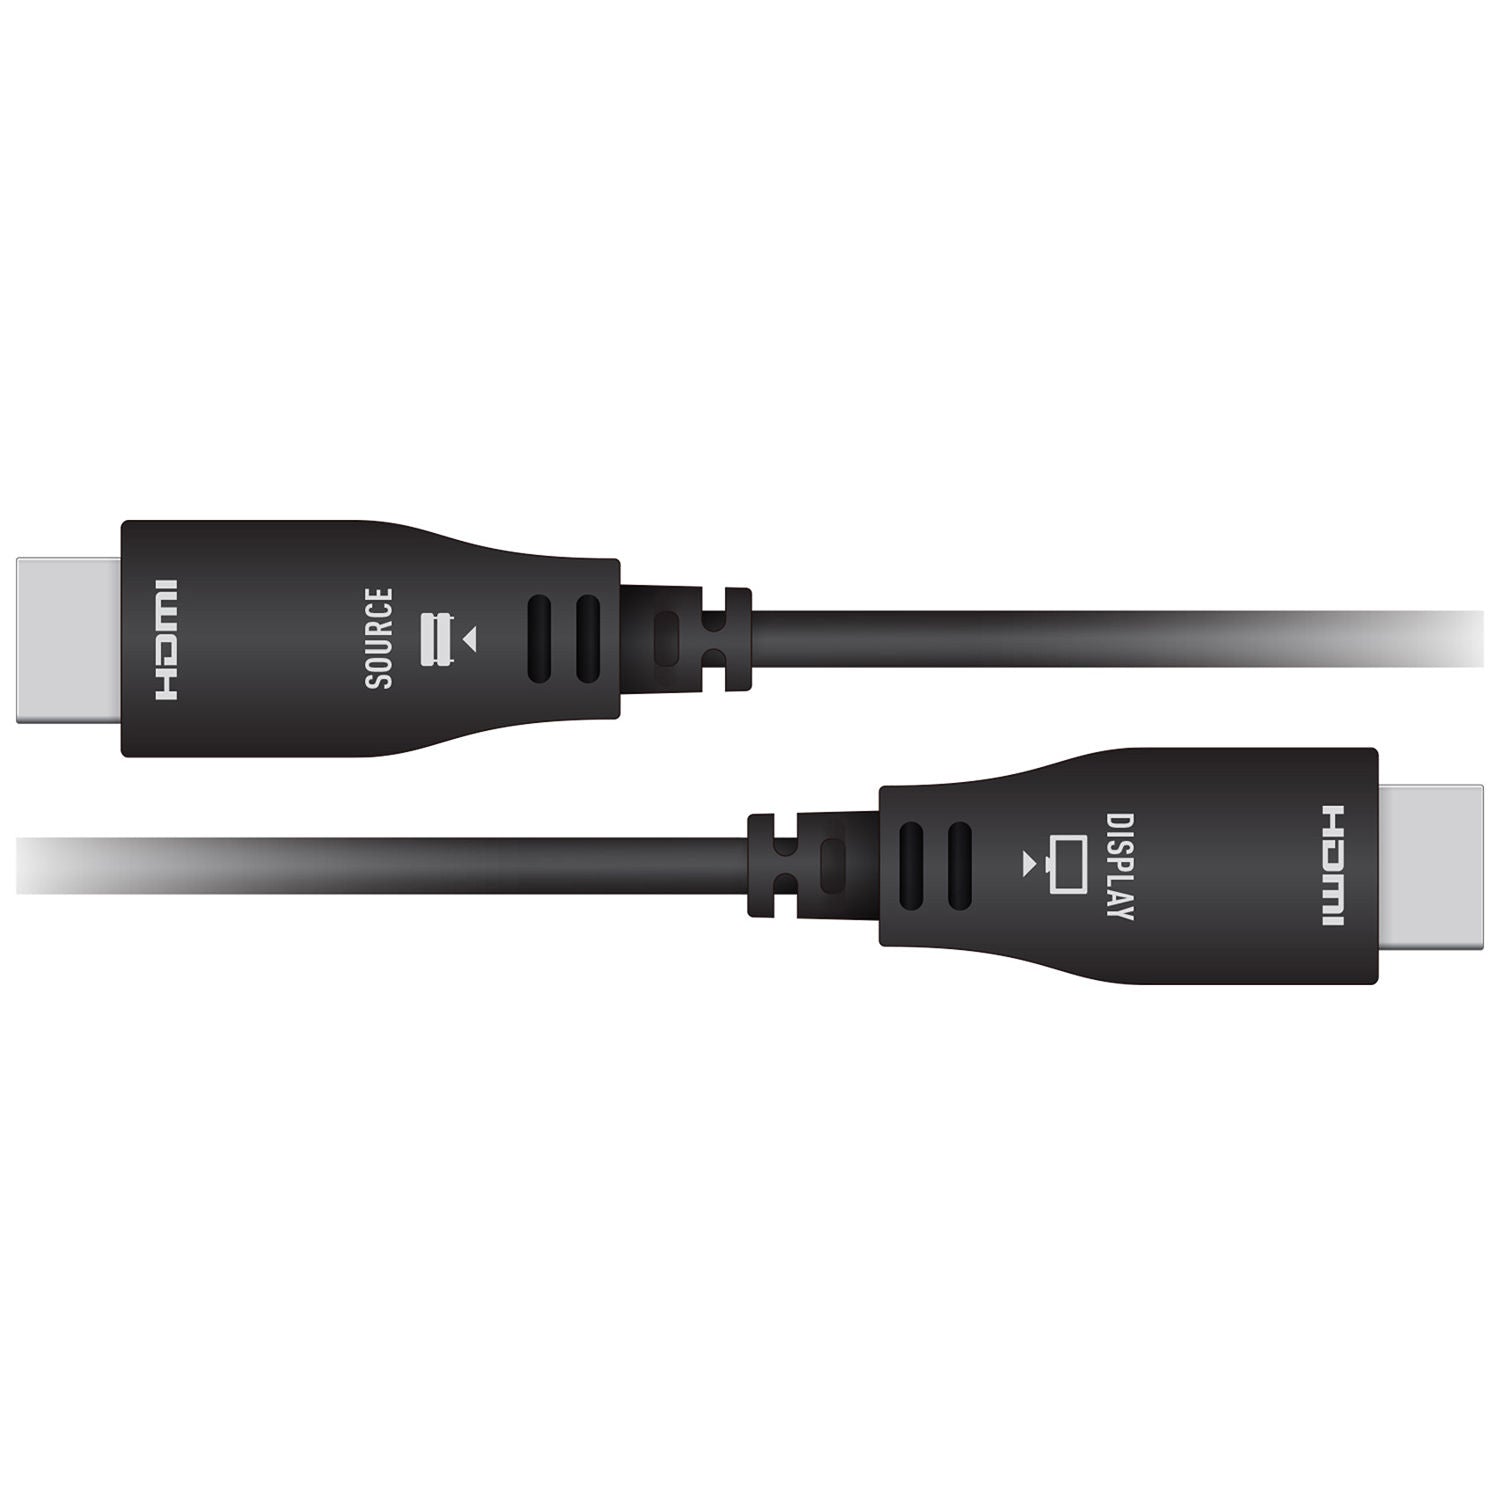 Key Digital Active Optical HDMI Fiber Cable